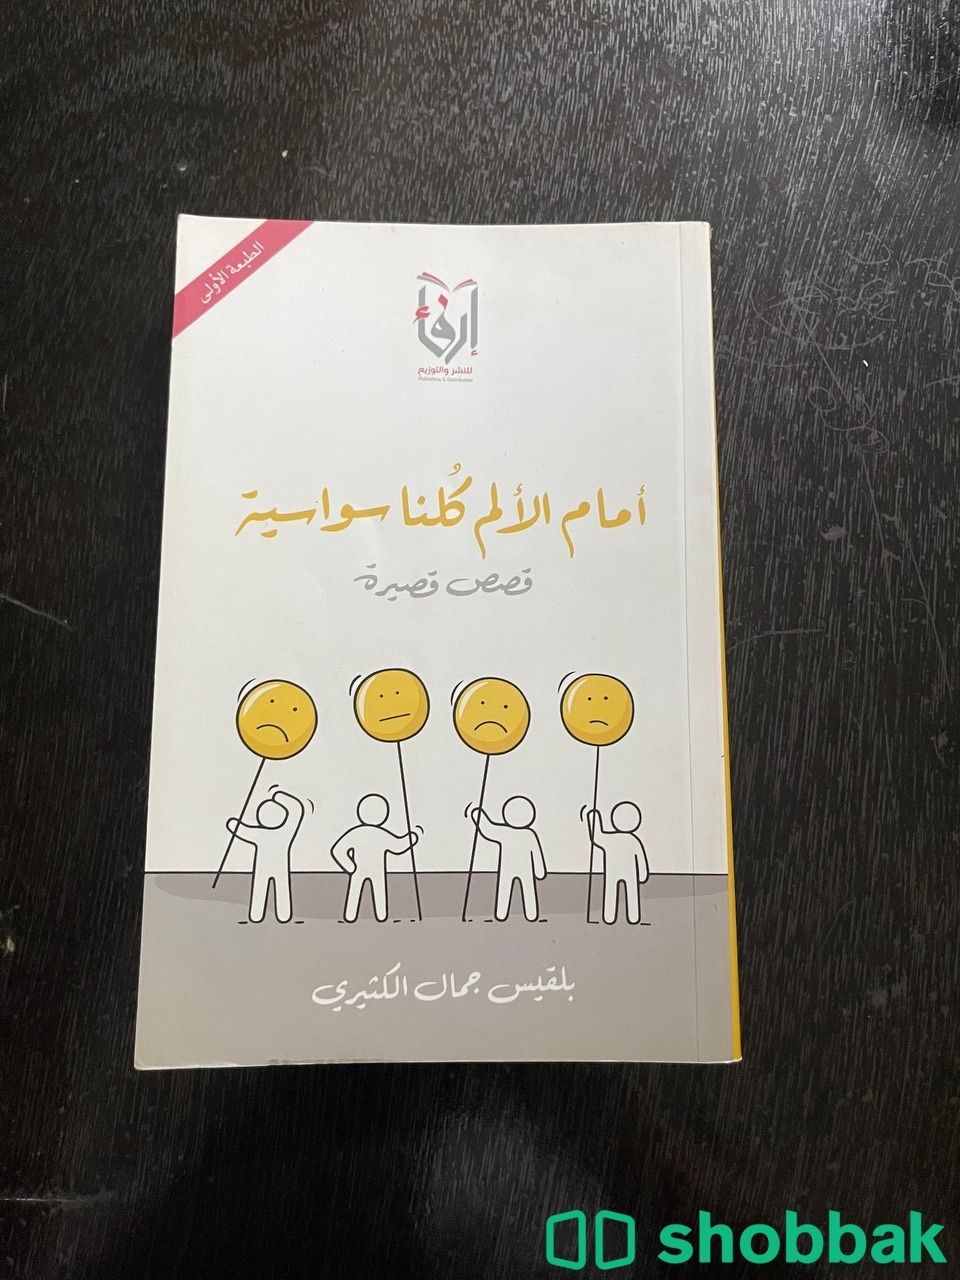 كتاب أمام الالم كلنا سواسية  Shobbak Saudi Arabia